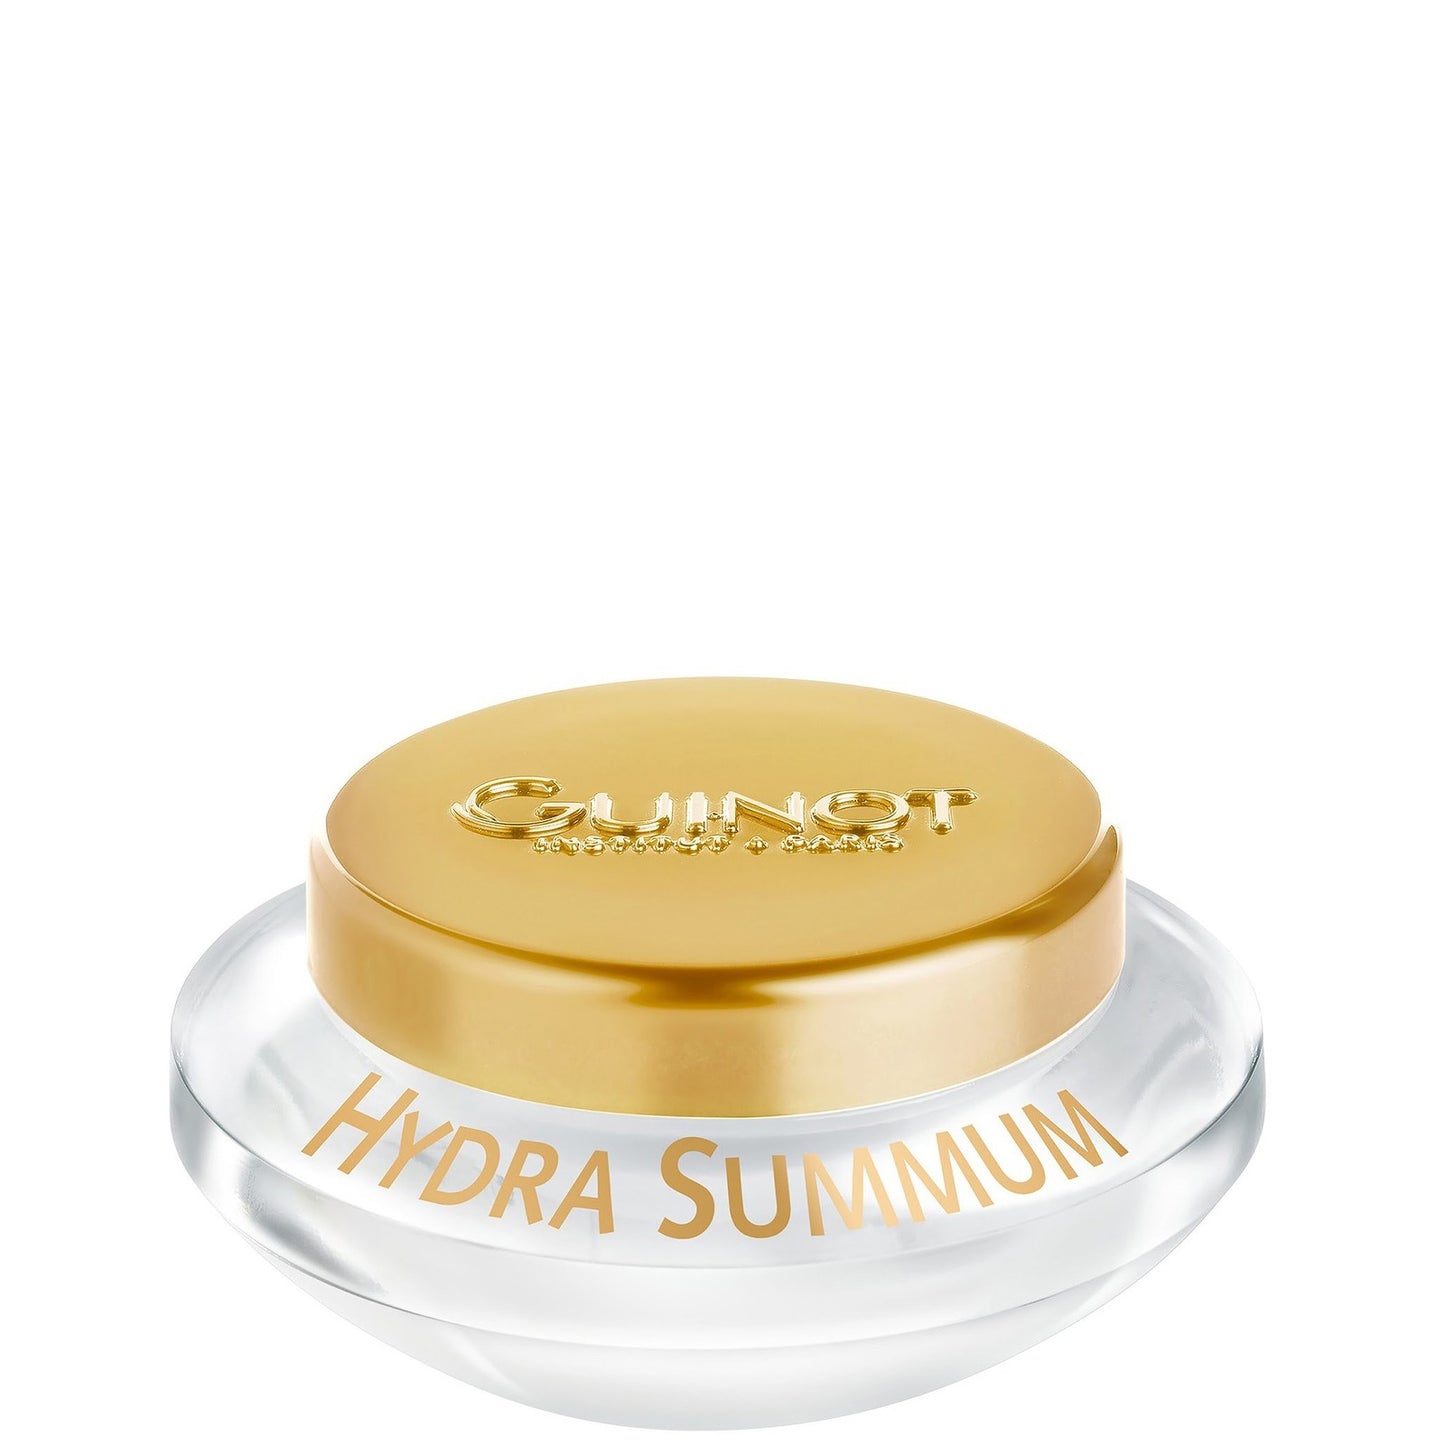 Hydra Summum Cream